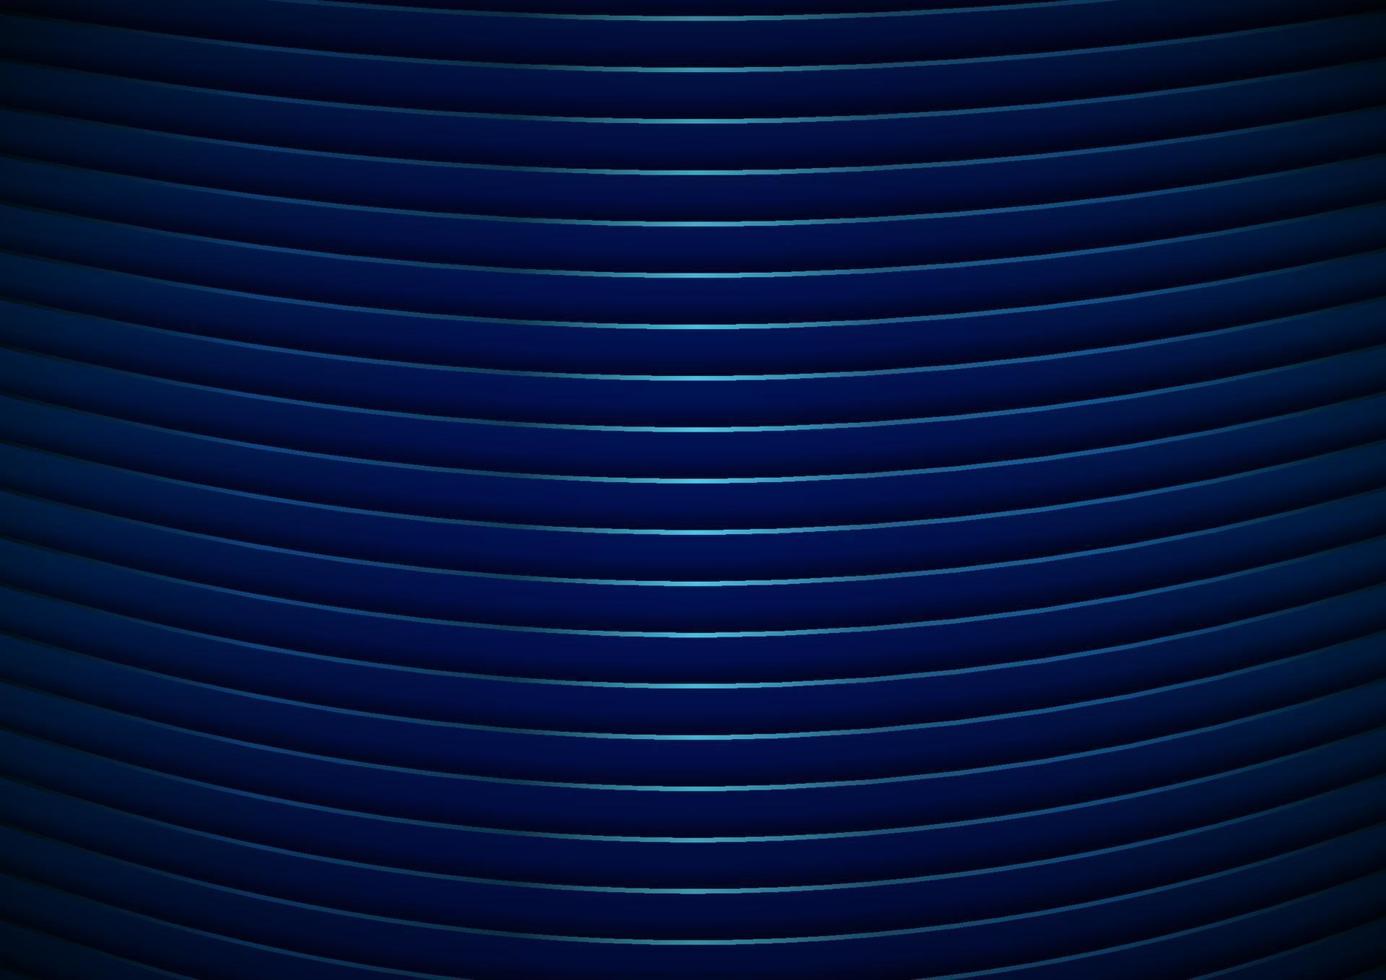 listras modernas abstratas linhas curvas padrão de fundo e textura brilhantes azuis. vetor